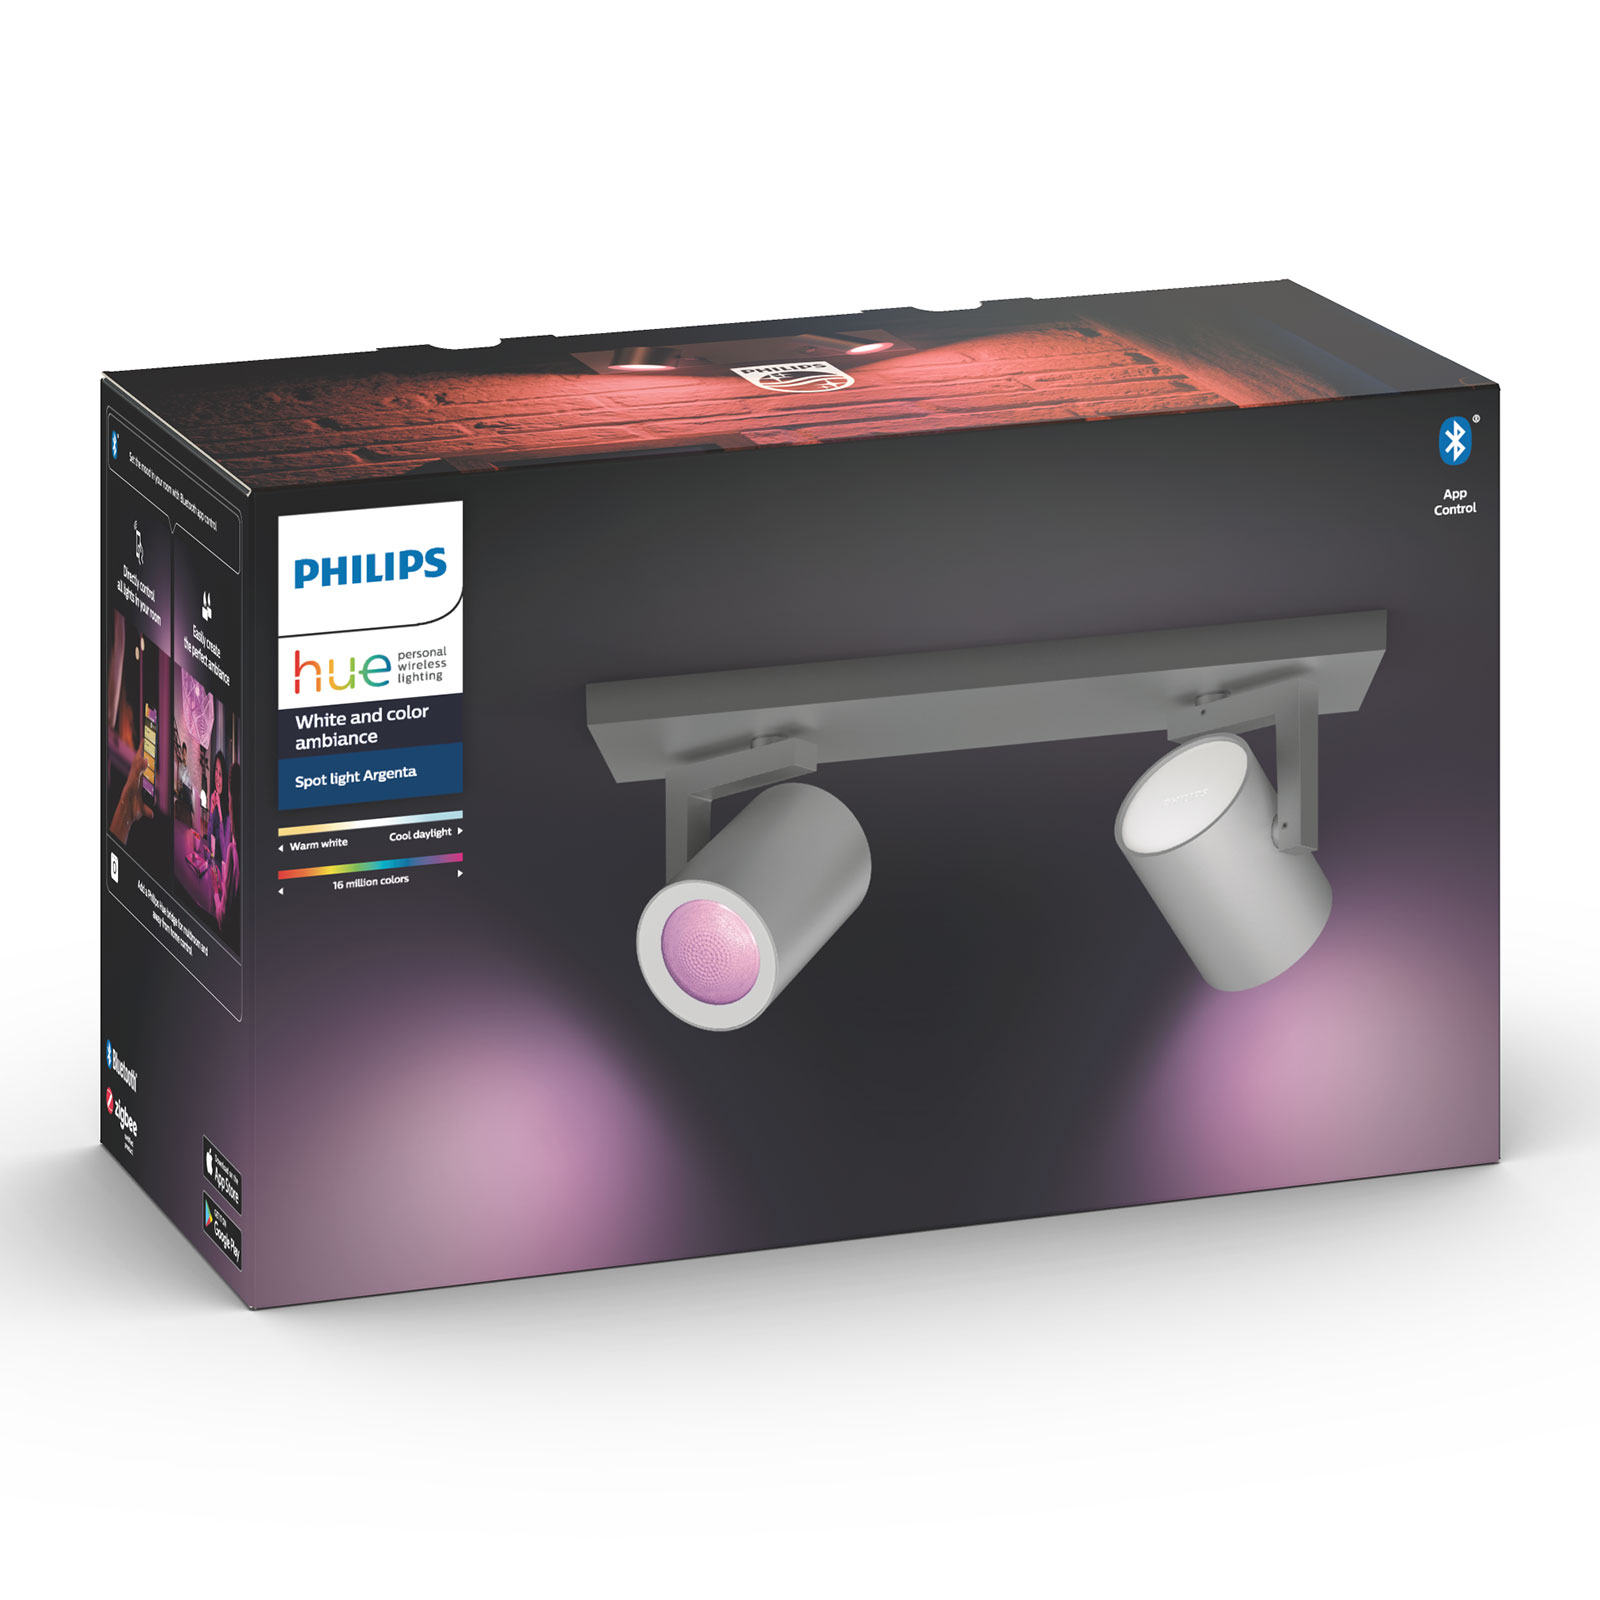 Philips Hue Argenta LED-spot 2-lamps aluminium